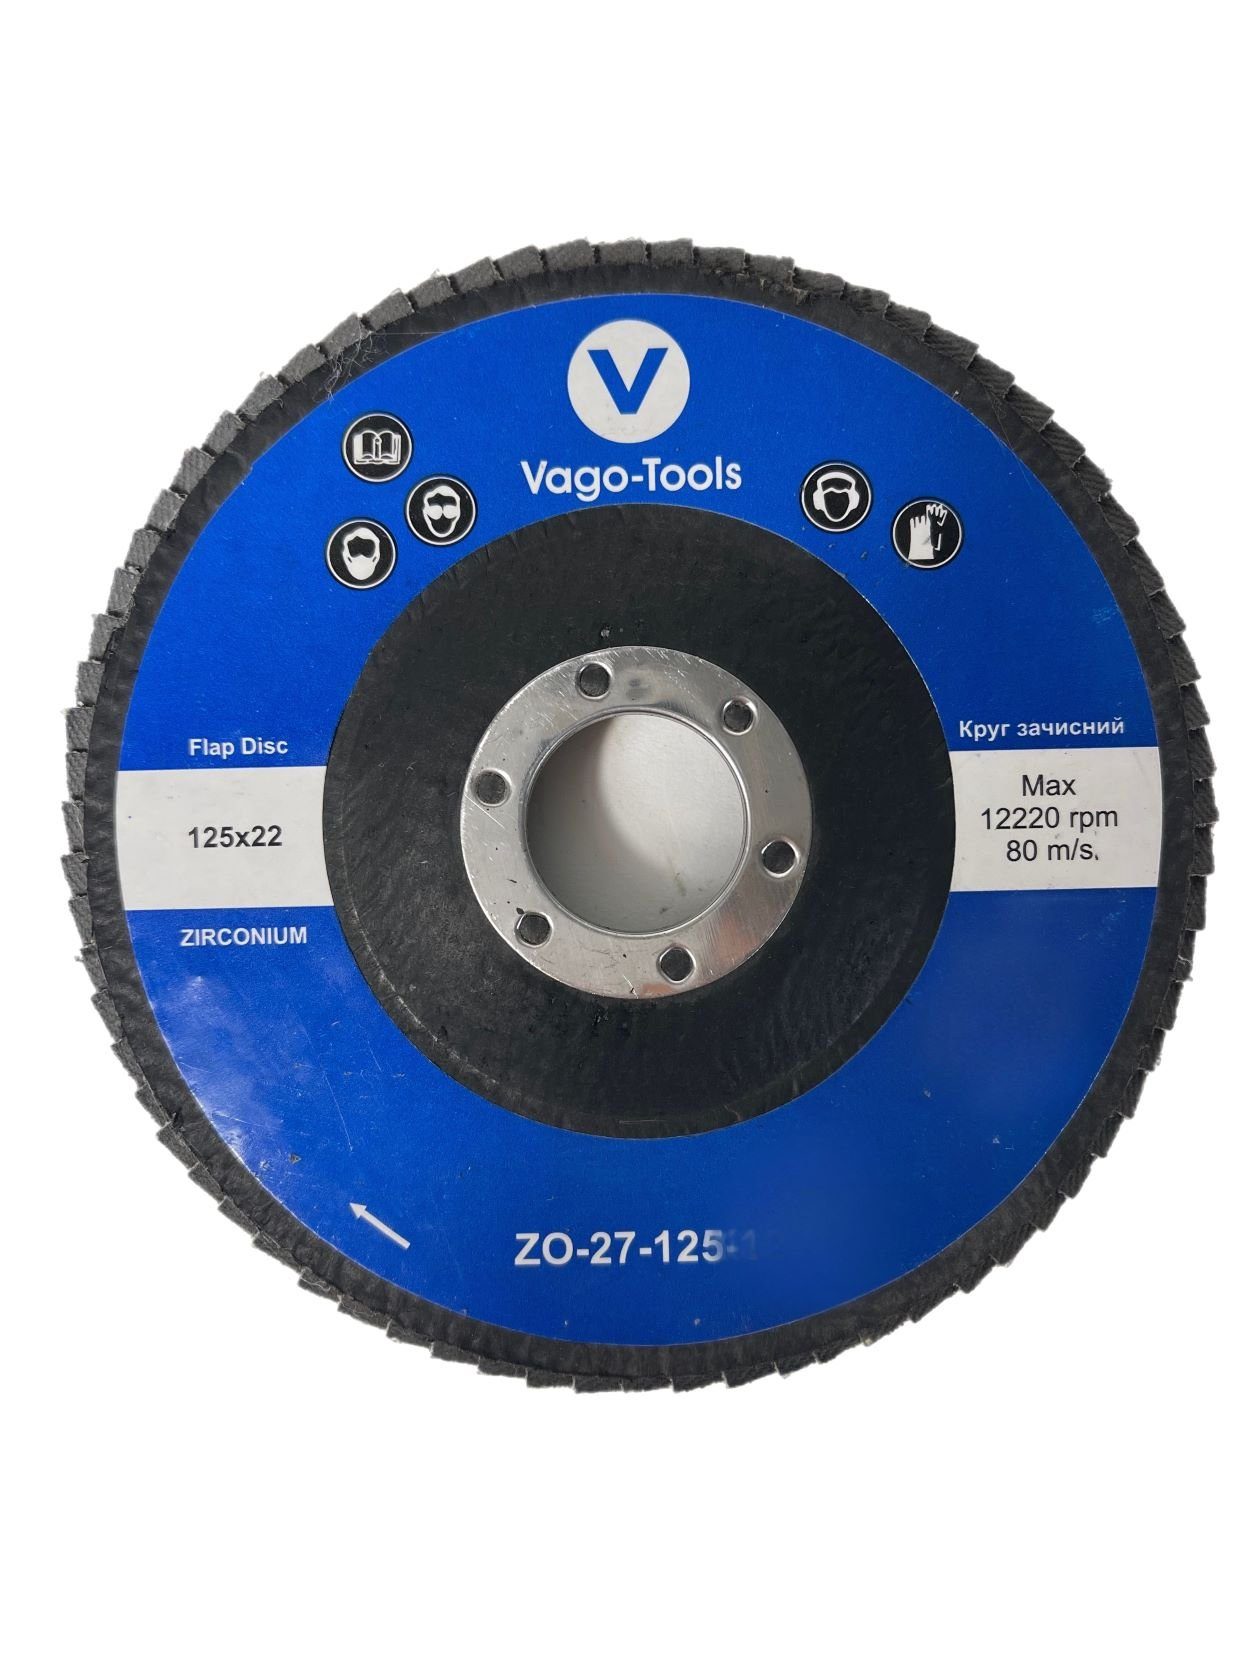 VaGo-Tools Schleifscheibe Fächerschleifscheiben 125mm P120 flach Blau 50x, (Packung)